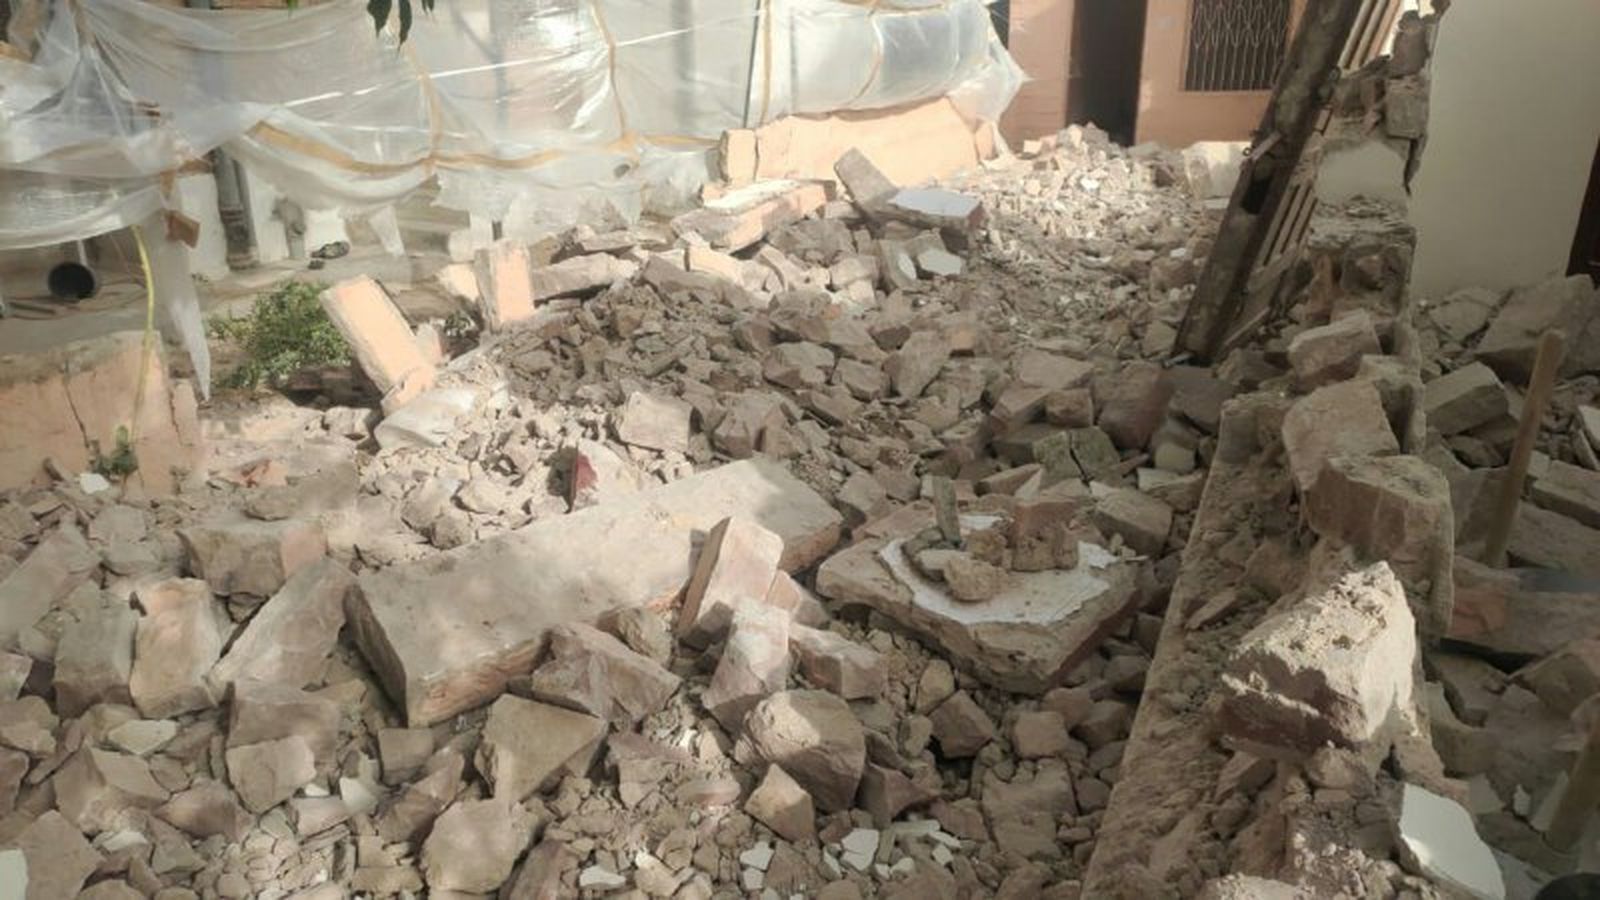 Accident : अचानक गिरी मकान की दीवार, श्रमिक की मौत